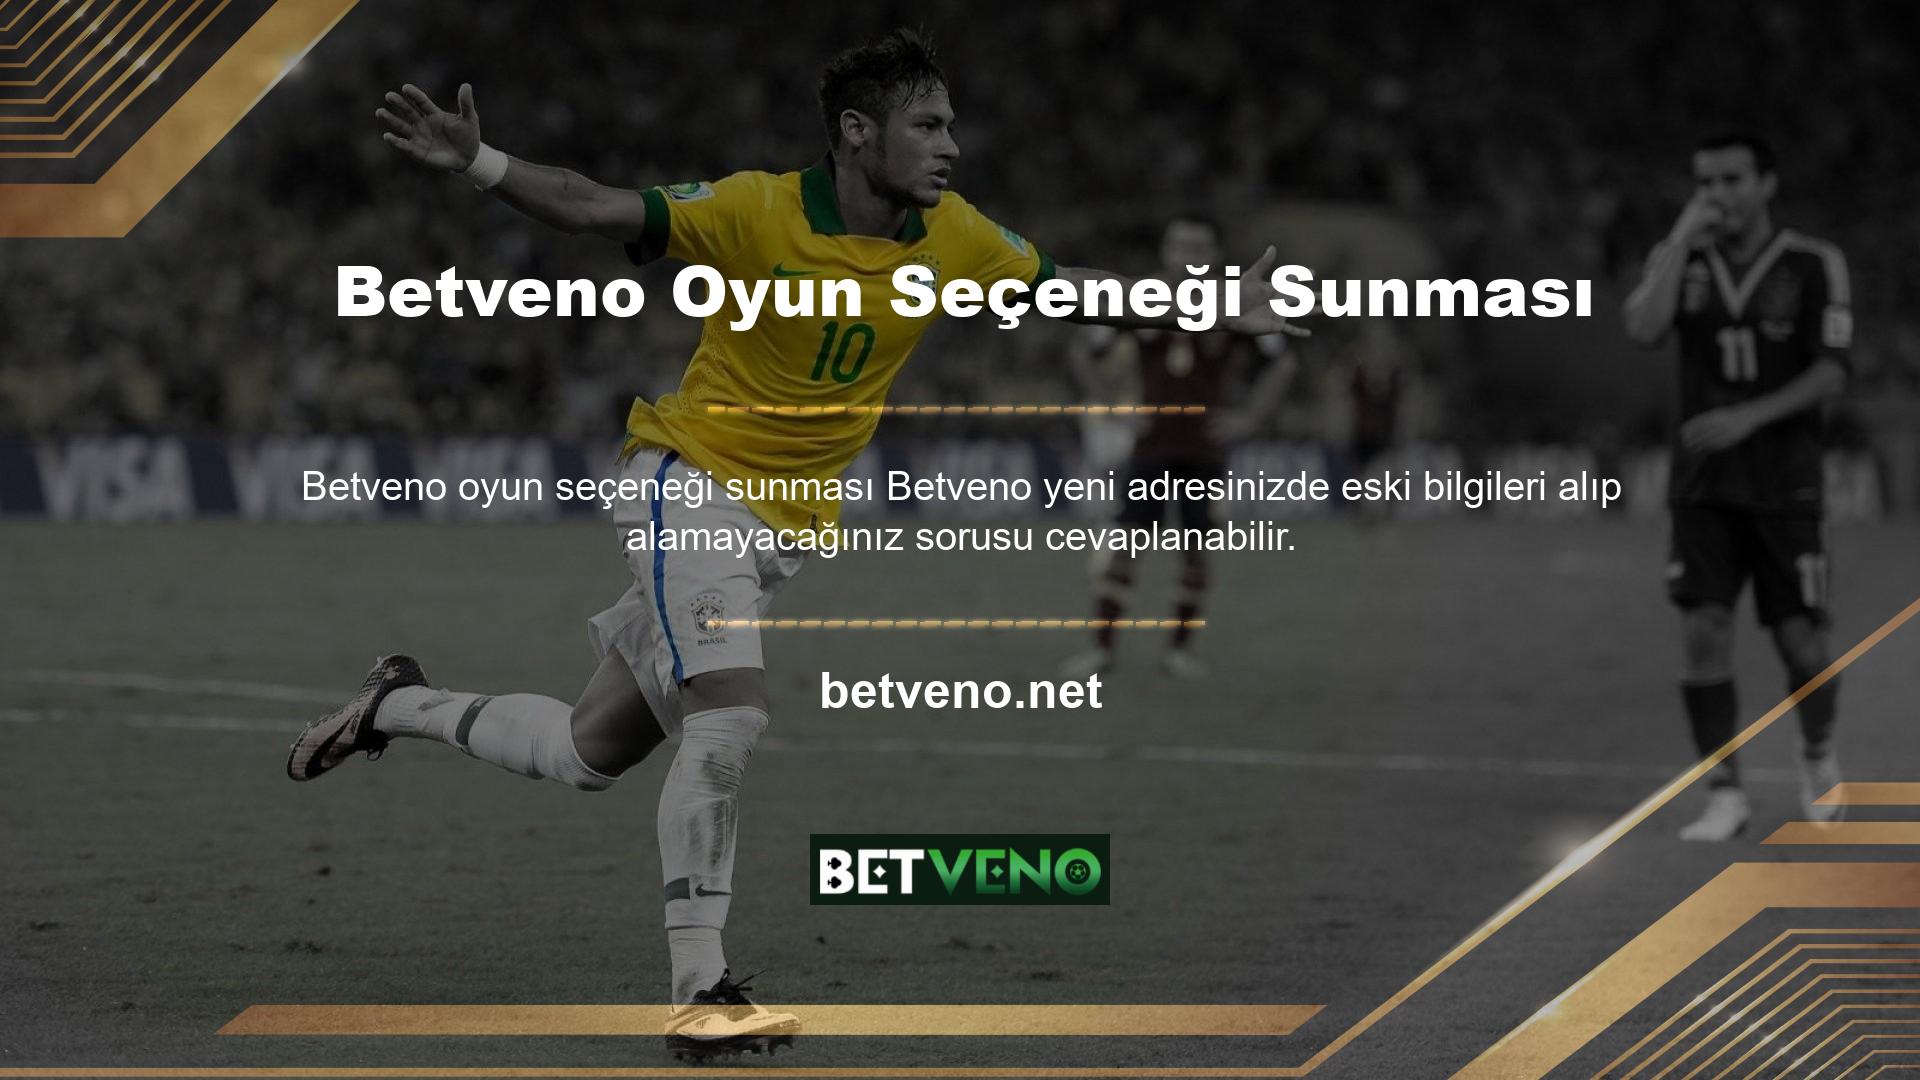 Yüzlerce oyun seçeneği sunan Betveno online bahis sitesini ziyaret ettiğinizde Betveno oyuncularına herhangi bir değişiklik yapılmamaktadır